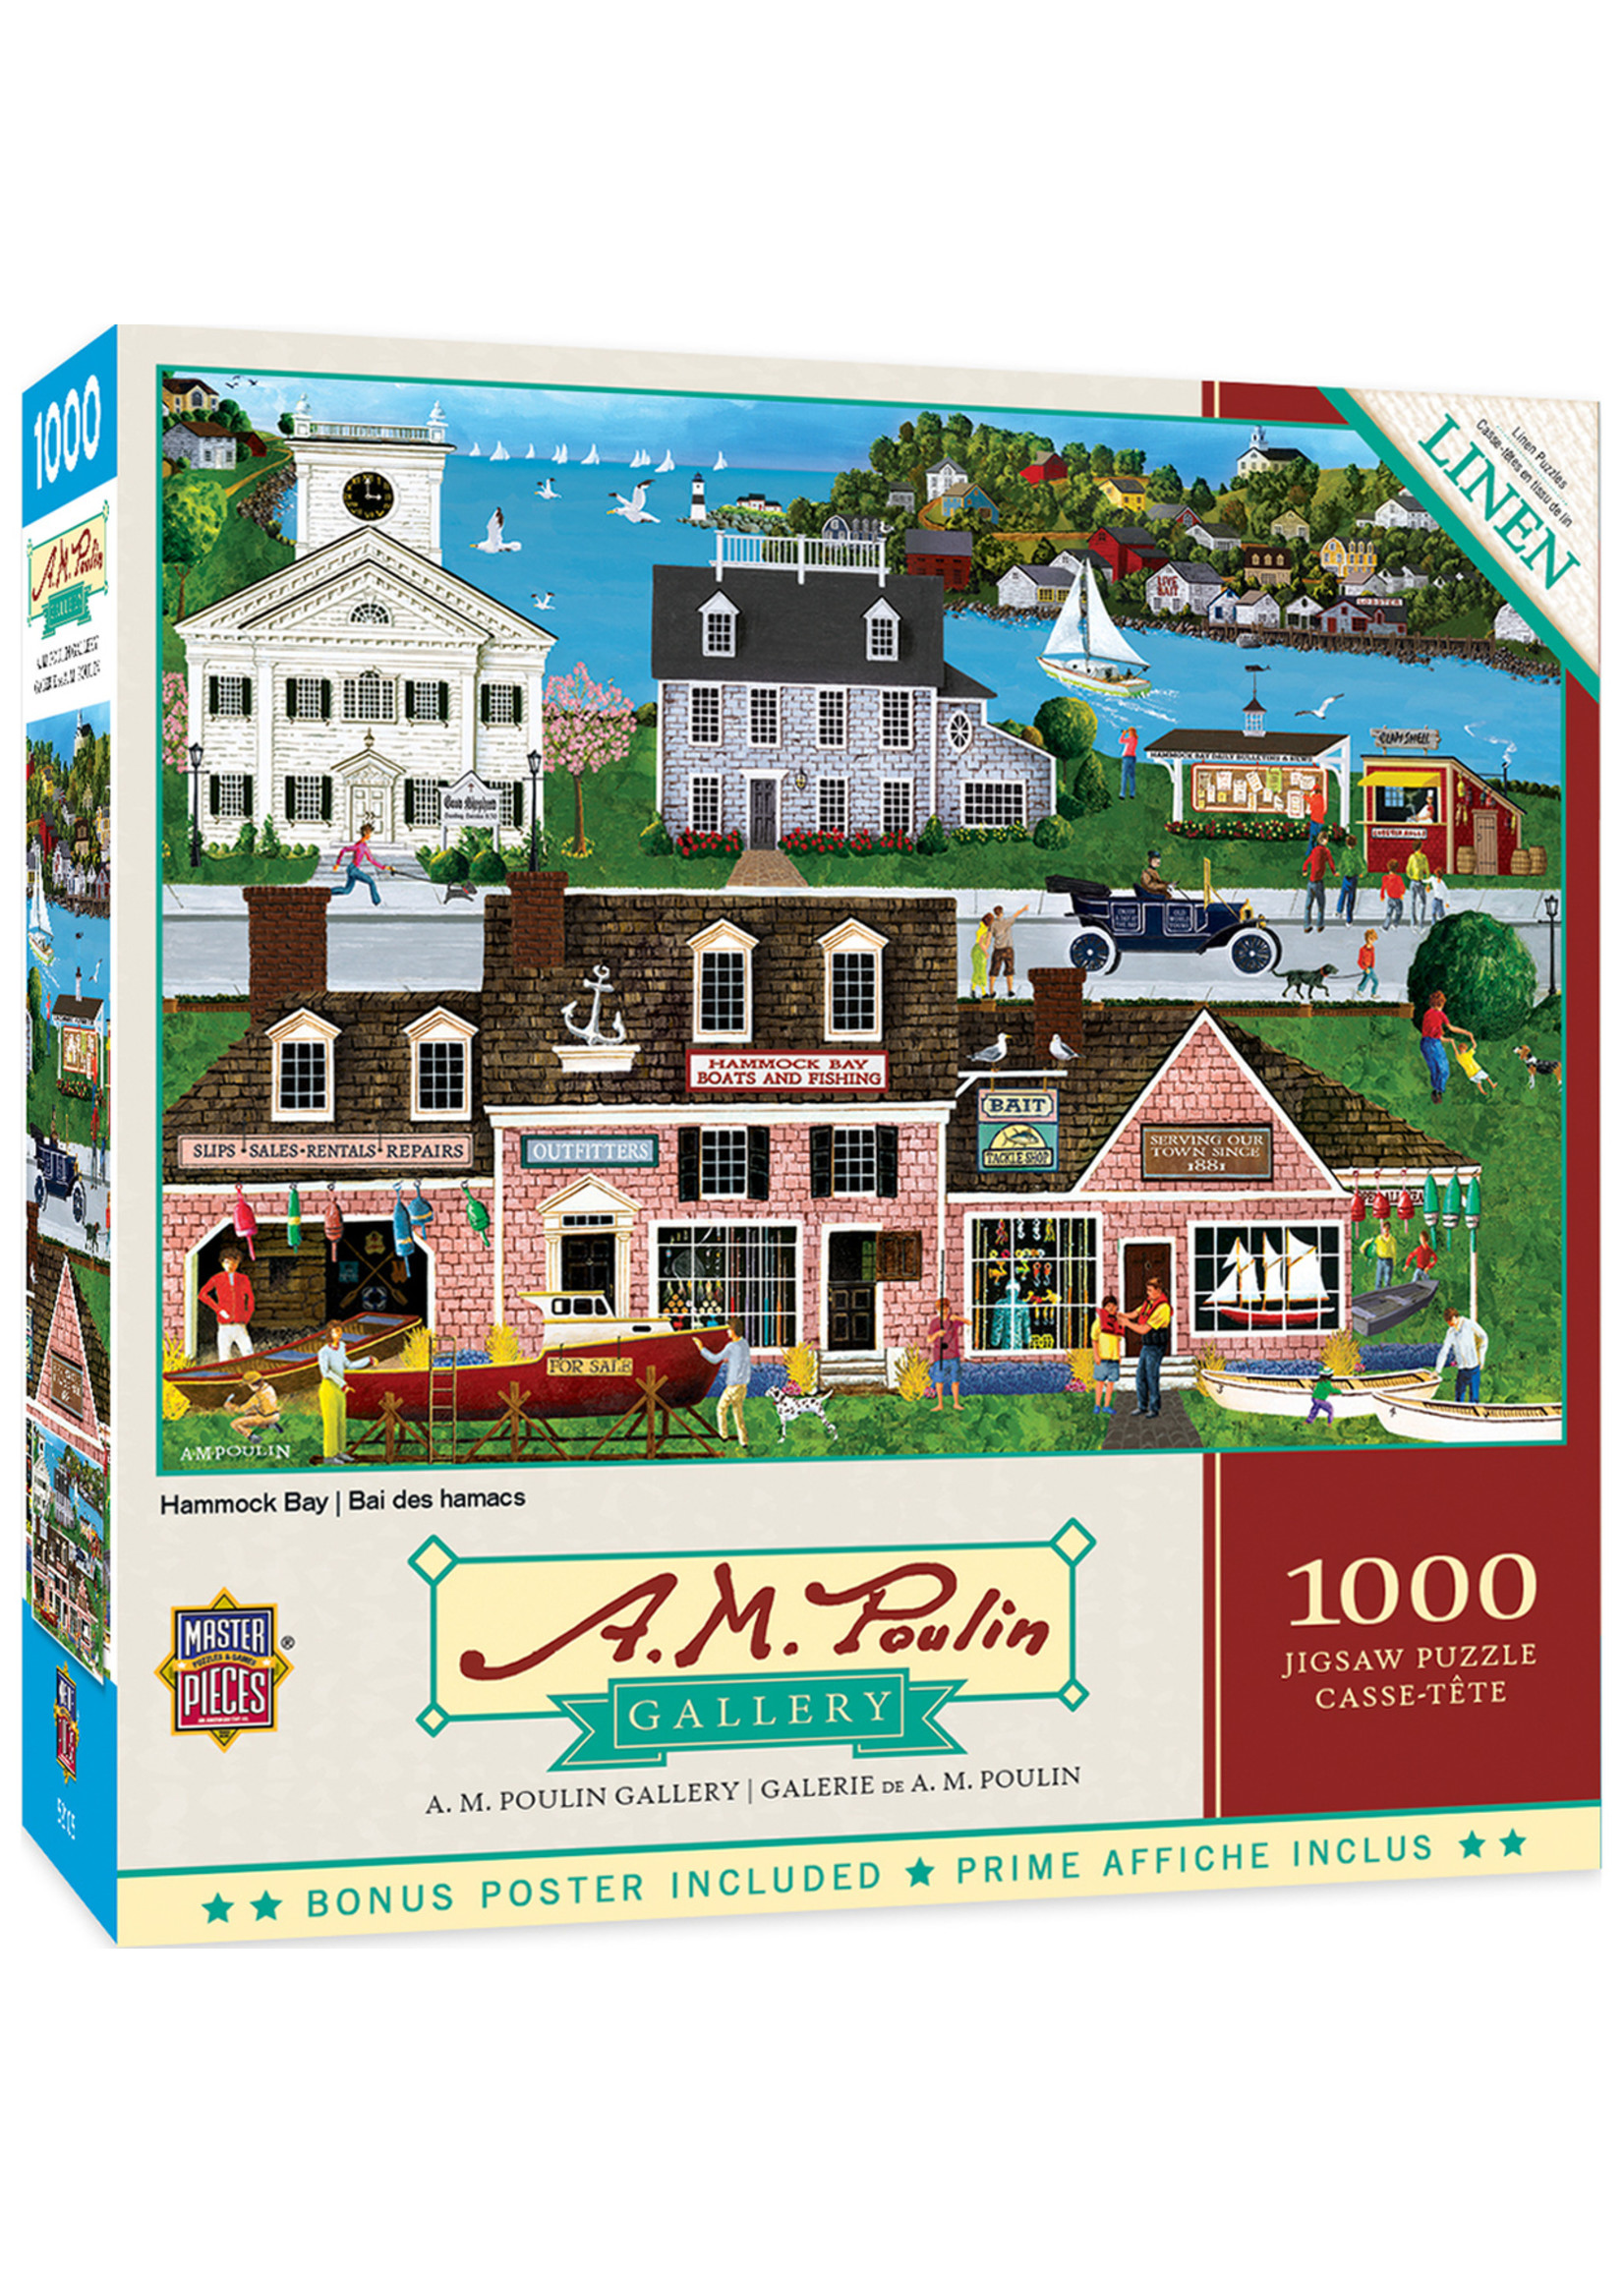 Masterpieces Puzzle Company "A.M. Poulin: Hammock Bay" 1000 Piece Puzzle